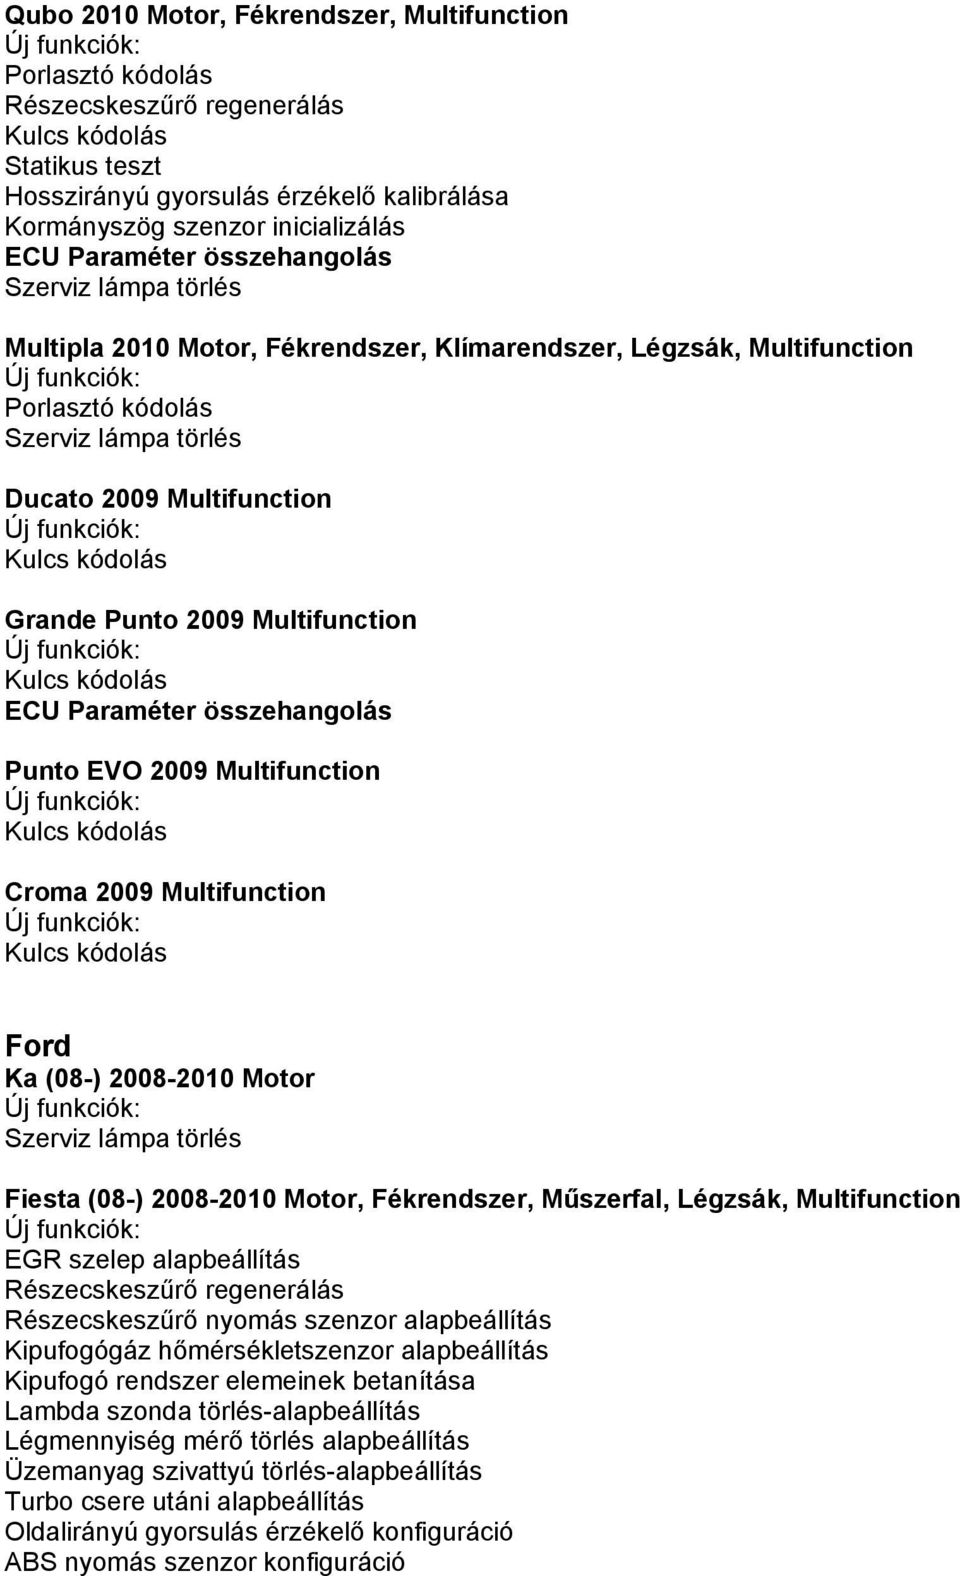 Multifunction Kulcs kódolás Ford Ka (08-) 2008-2010 Motor Fiesta (08-) 2008-2010 Motor, Fékrendszer, Műszerfal, Légzsák, Multifunction EGR szelep alapbeállítás Részecskeszűrő nyomás szenzor